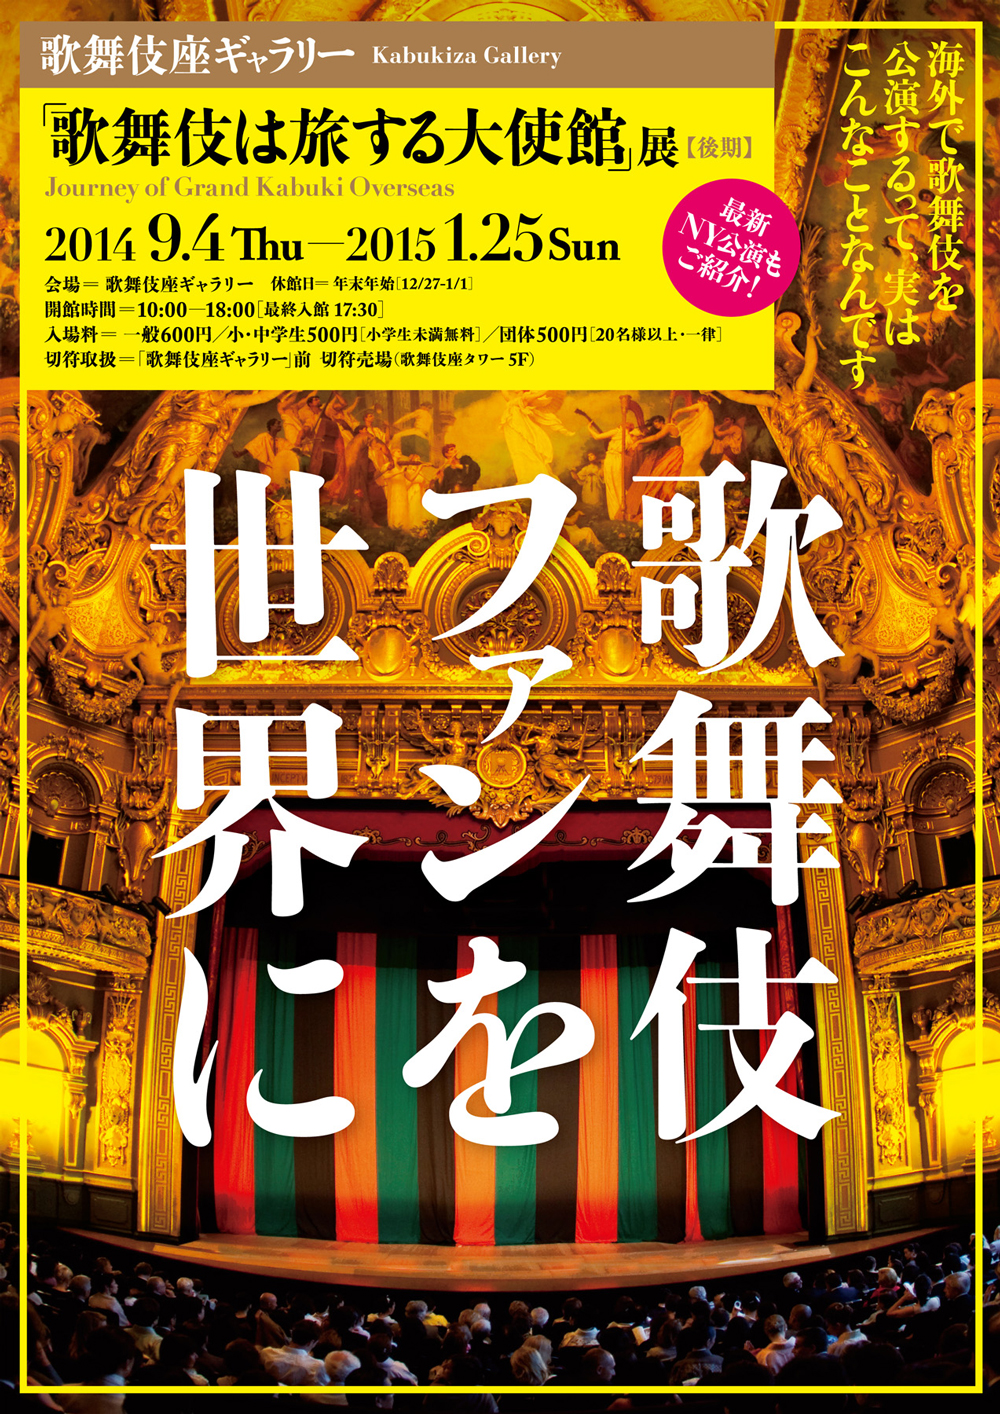 歌舞伎座ギャラリー後期展示「歌舞伎ファンを世界に」のお知らせ